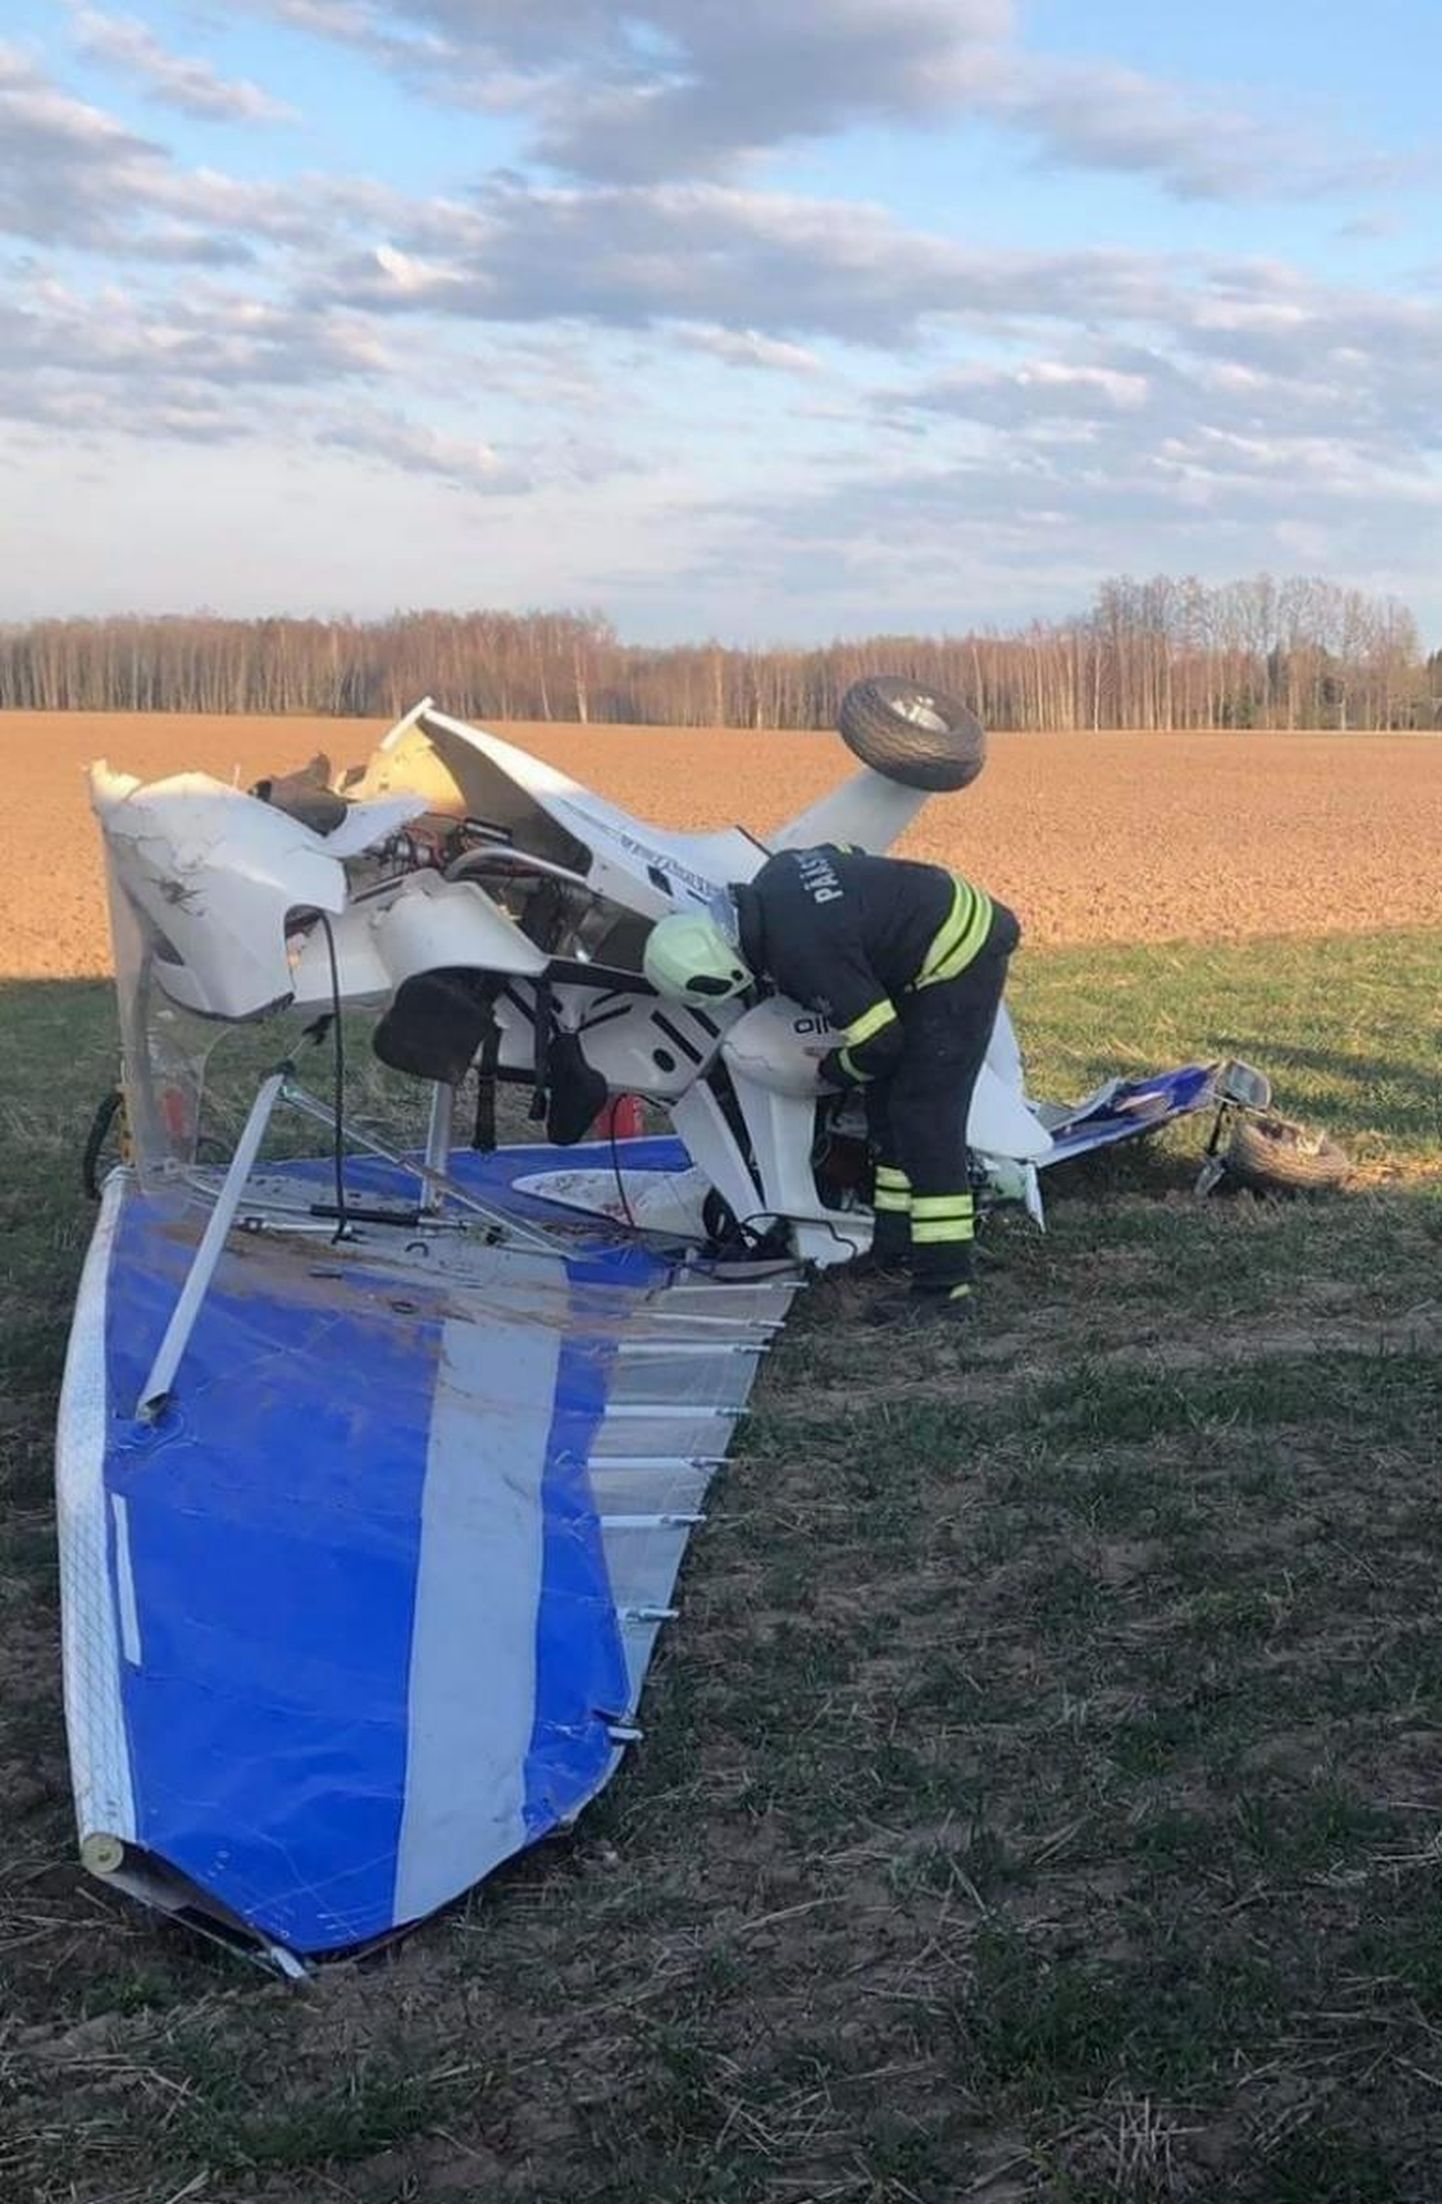 Riidaja lennuvälja lähedal lennuõnnetus registreerimata iseehitatud motoriseeritud deltaplaaniga. Õnnetuses sai viga õhusõiduki piloot. 